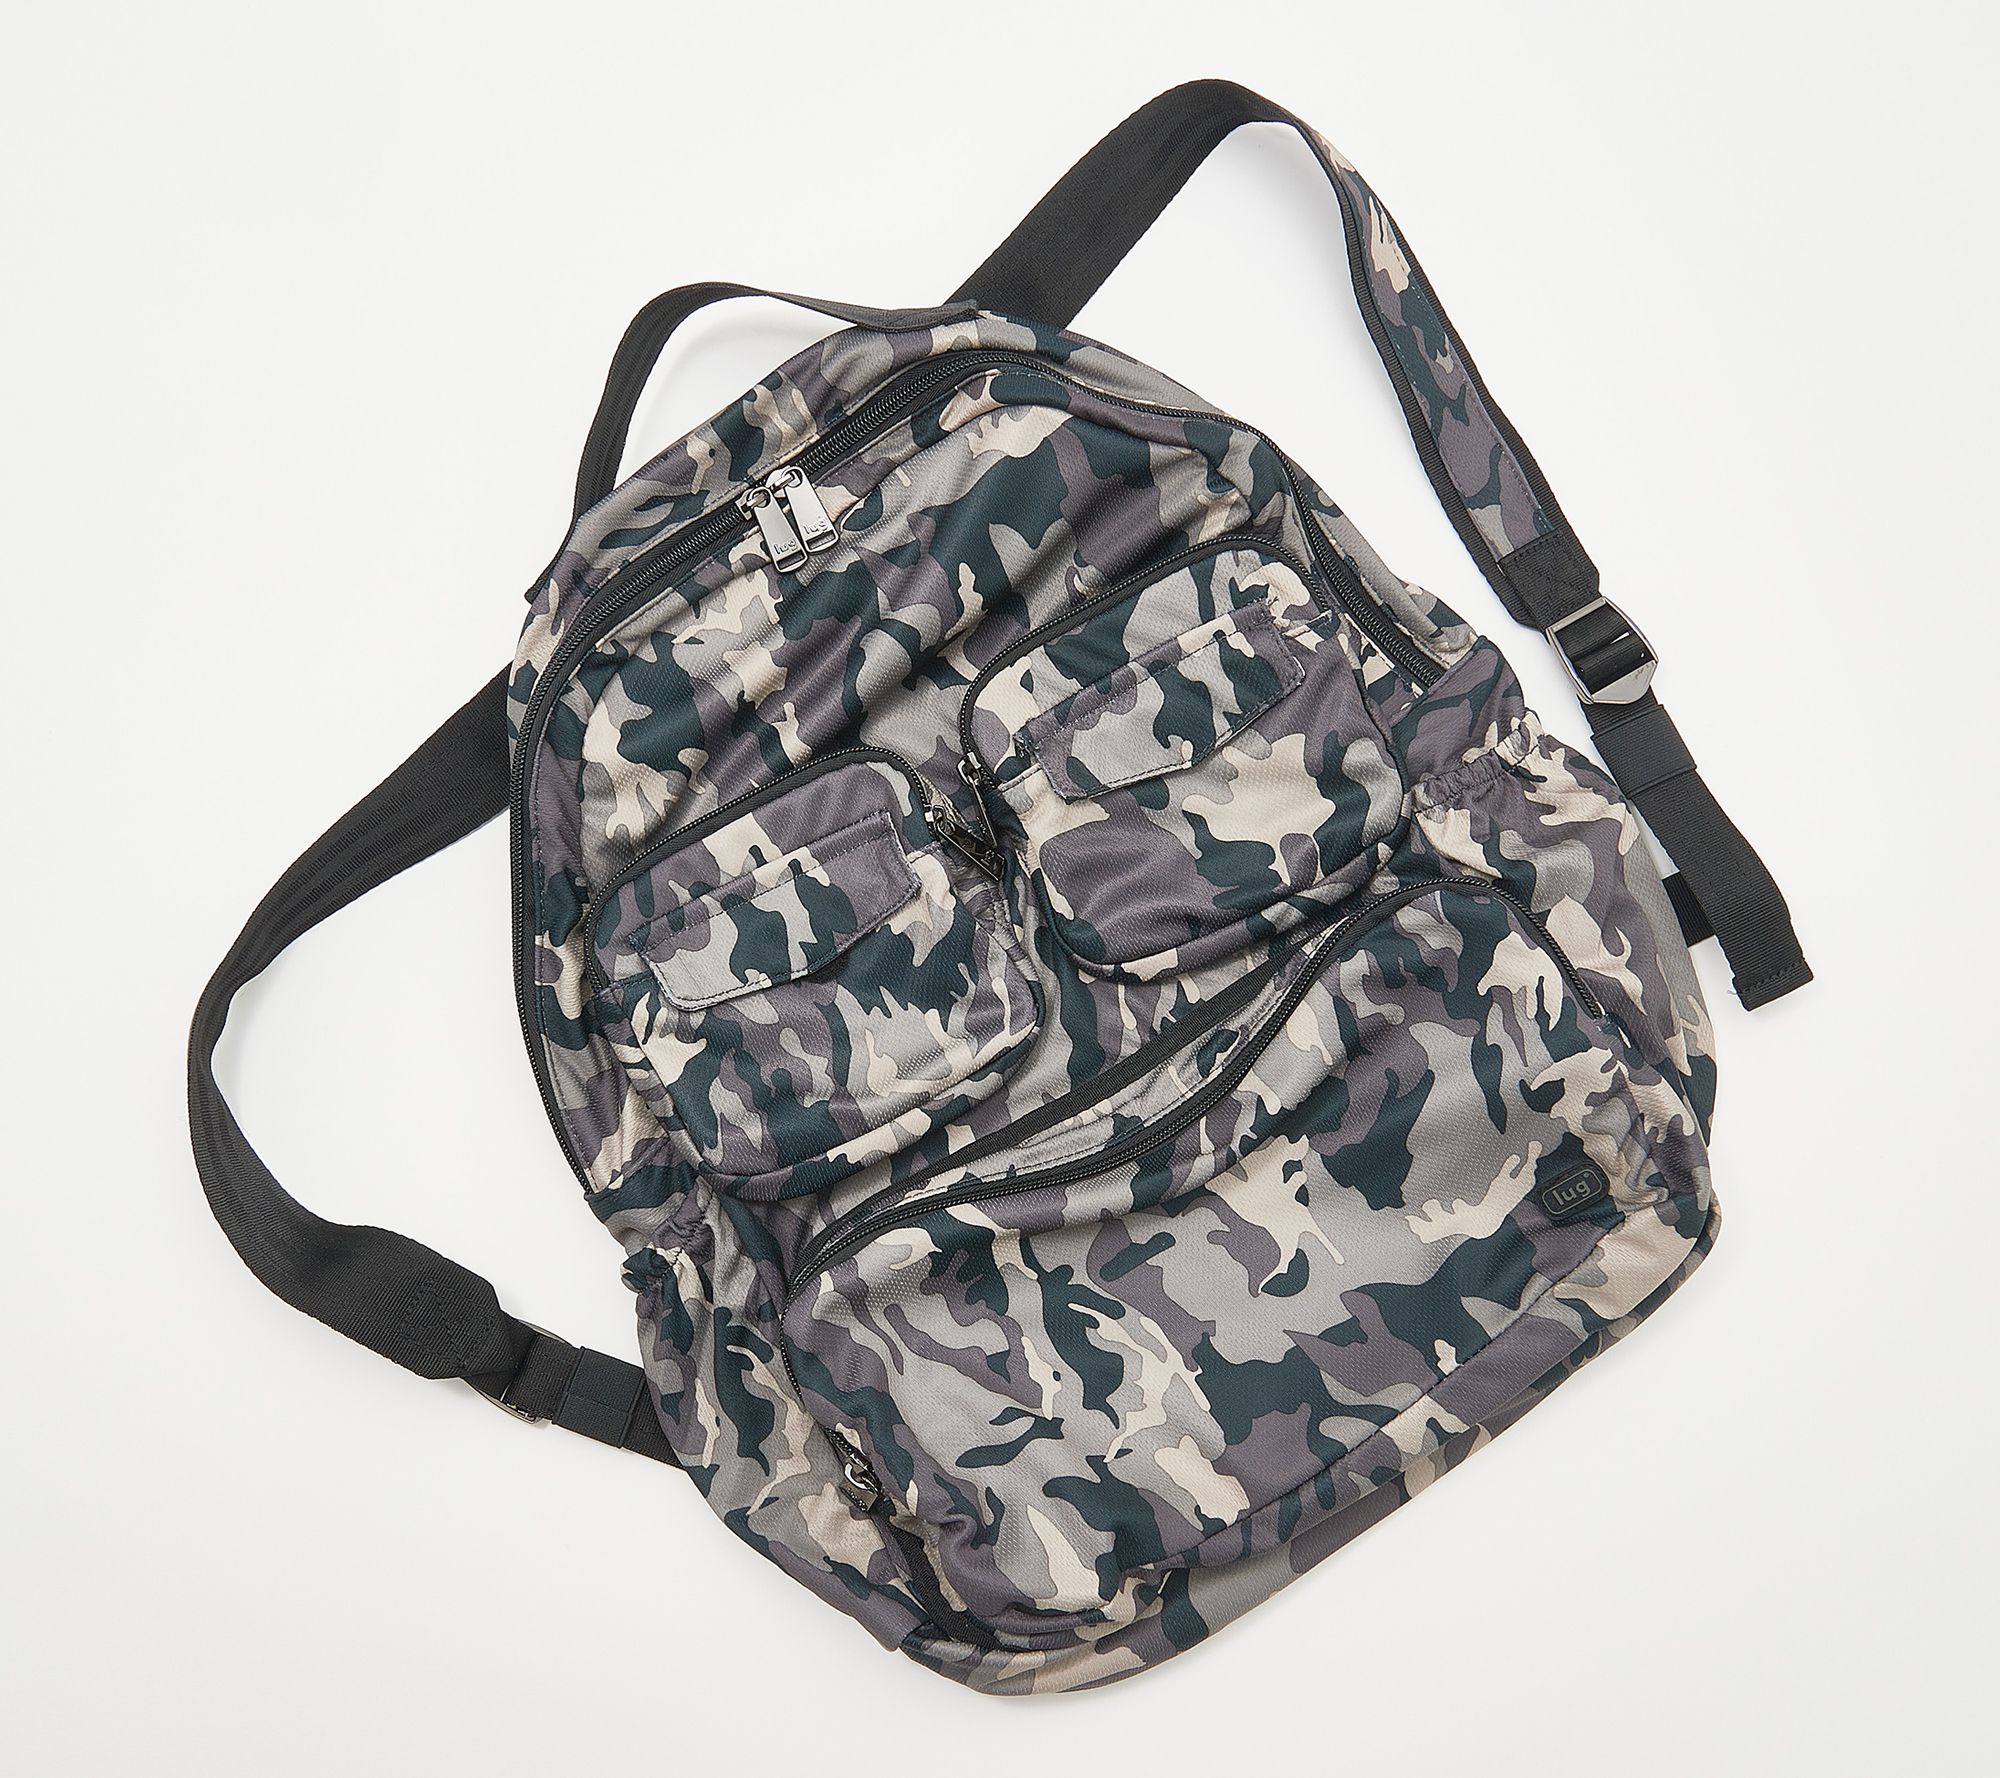 Puddle Jumper SE Packable Backpack 